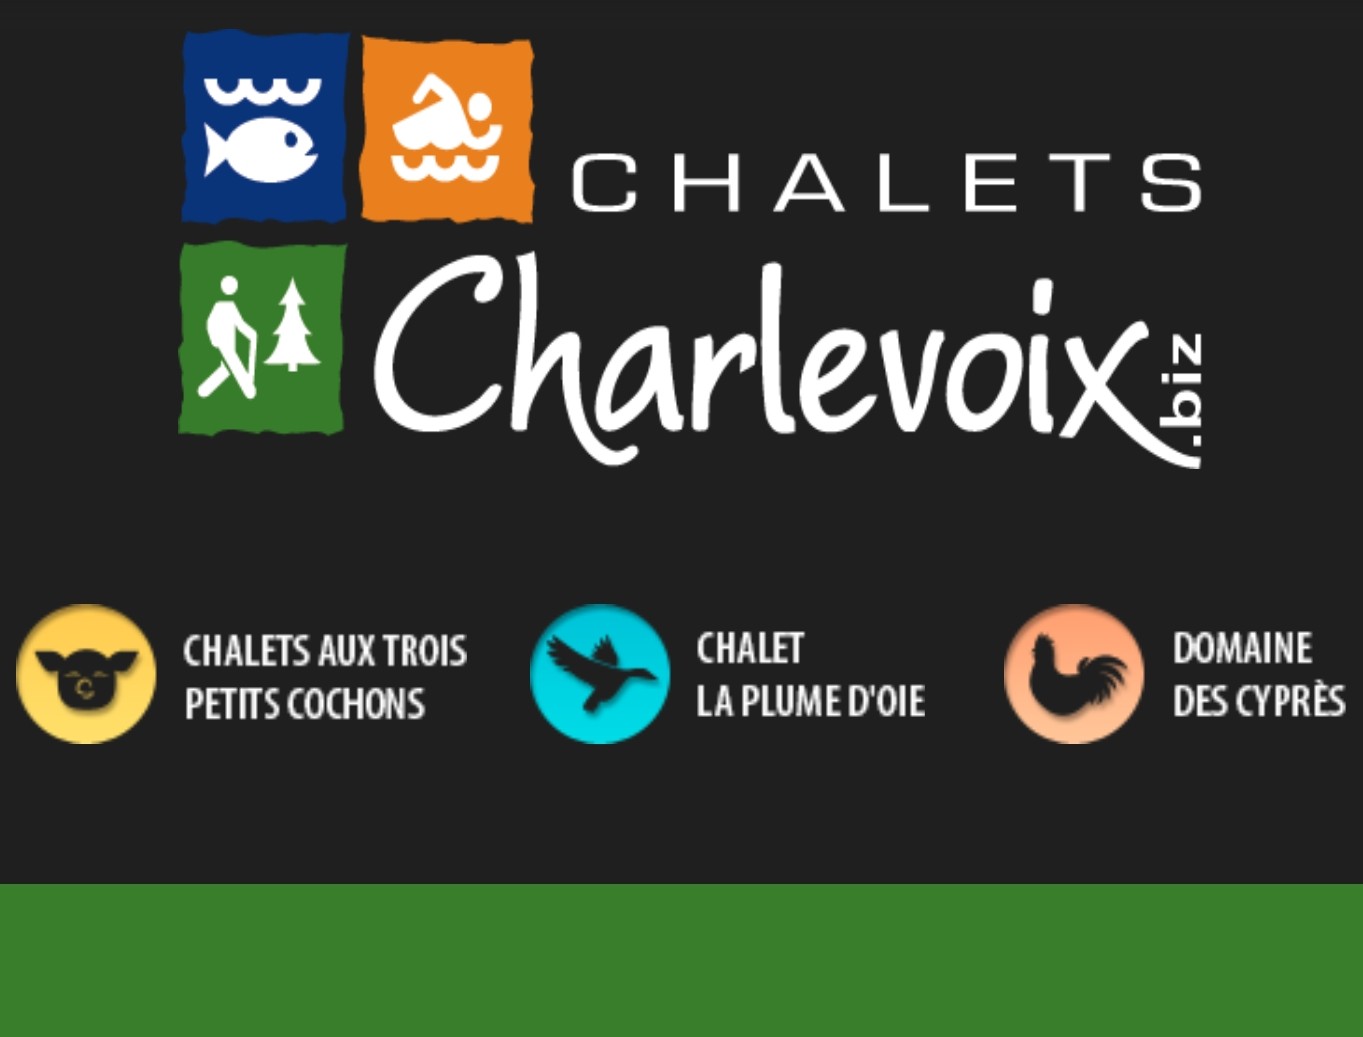 Chalets Charlevoix 2019